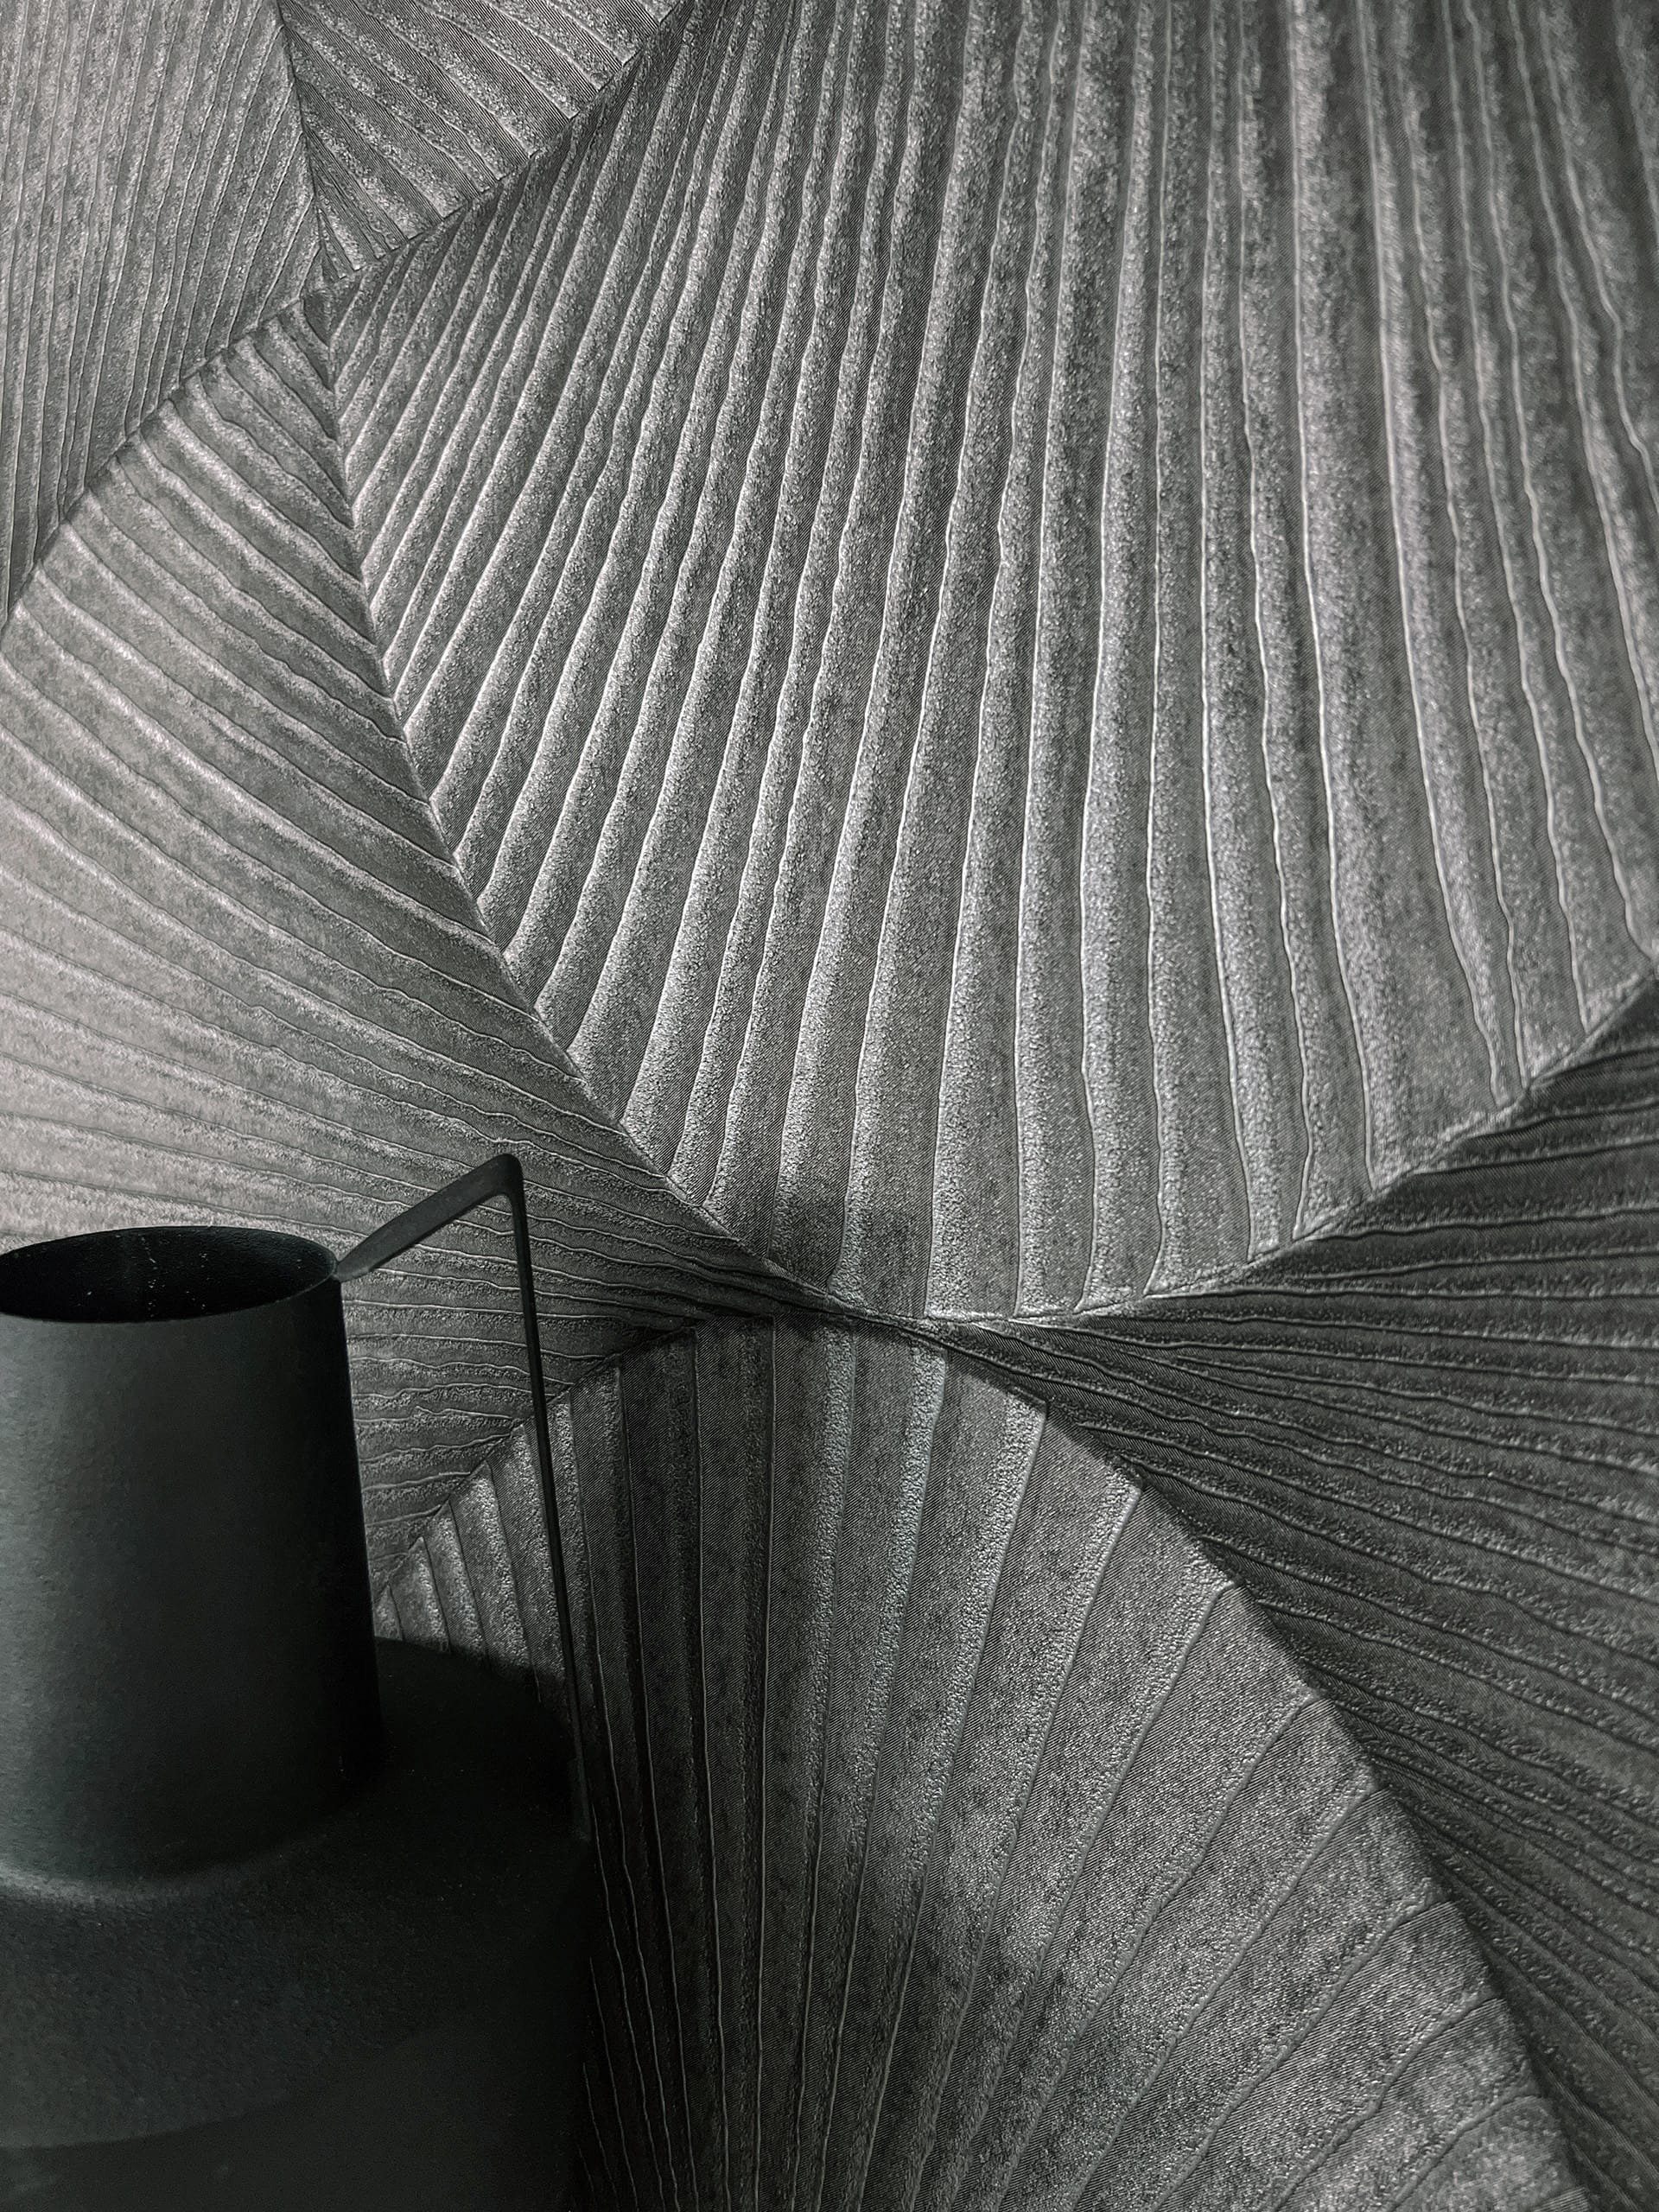 Newroom Vliestapete, Anthrazit Tapete Glamour Muster - Mustertapete Retromuster Dunkelgrau Metallic Modern 3D Optik Struktur Glanz für Wohnzimmer Schlafzimmer Küche